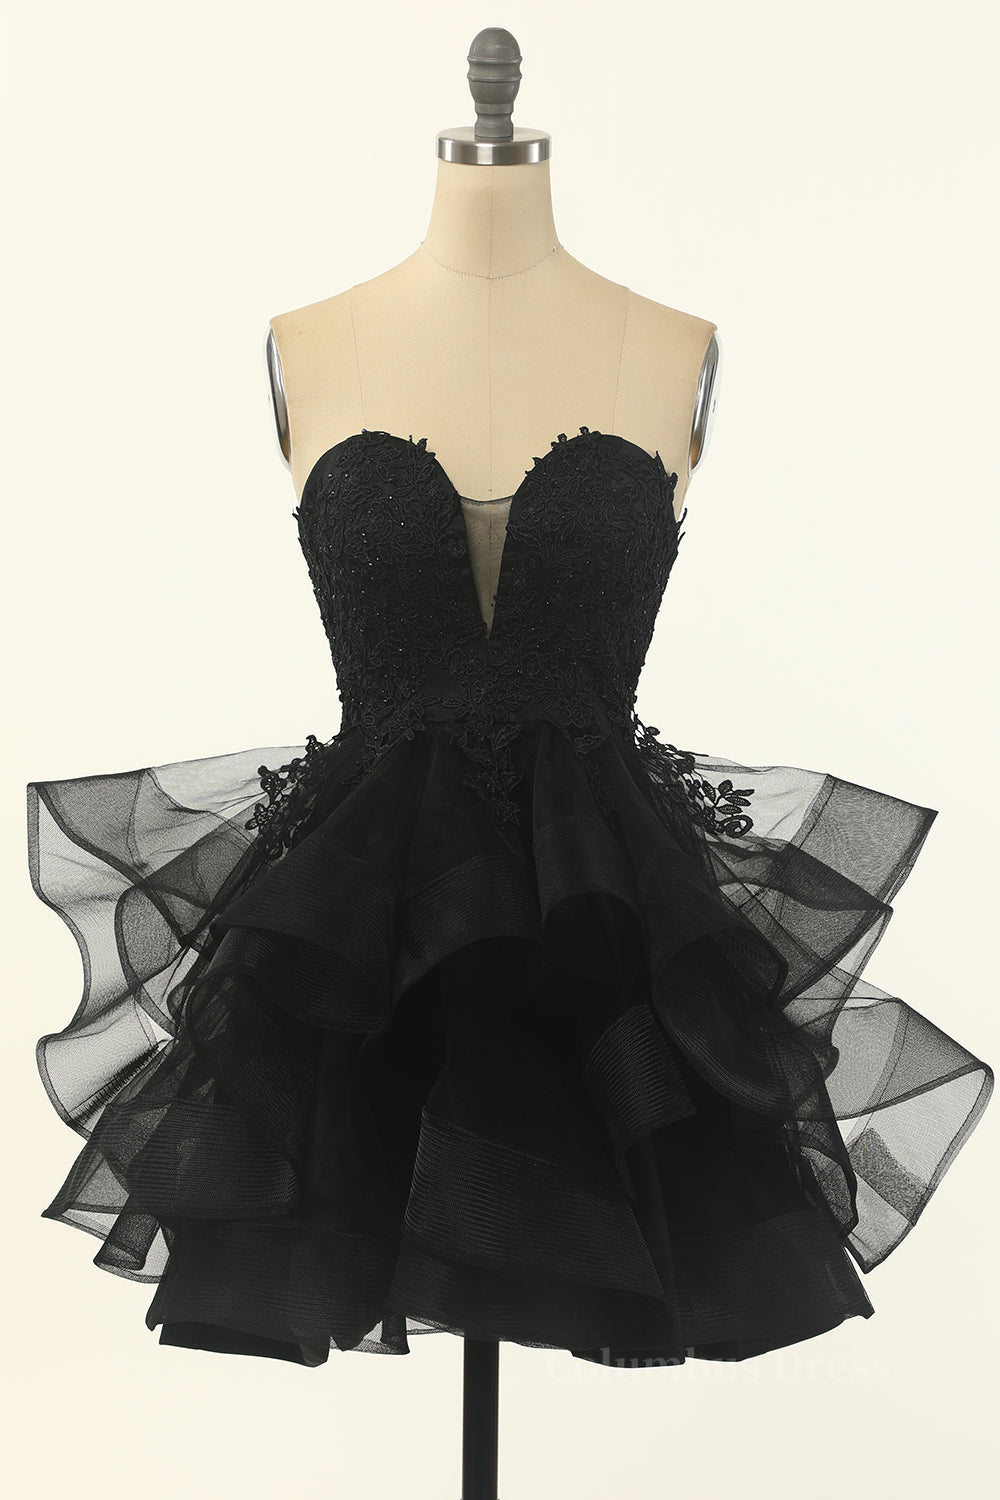 Little Black Dress outfit, Bridesmaid Dress Beach Wedding